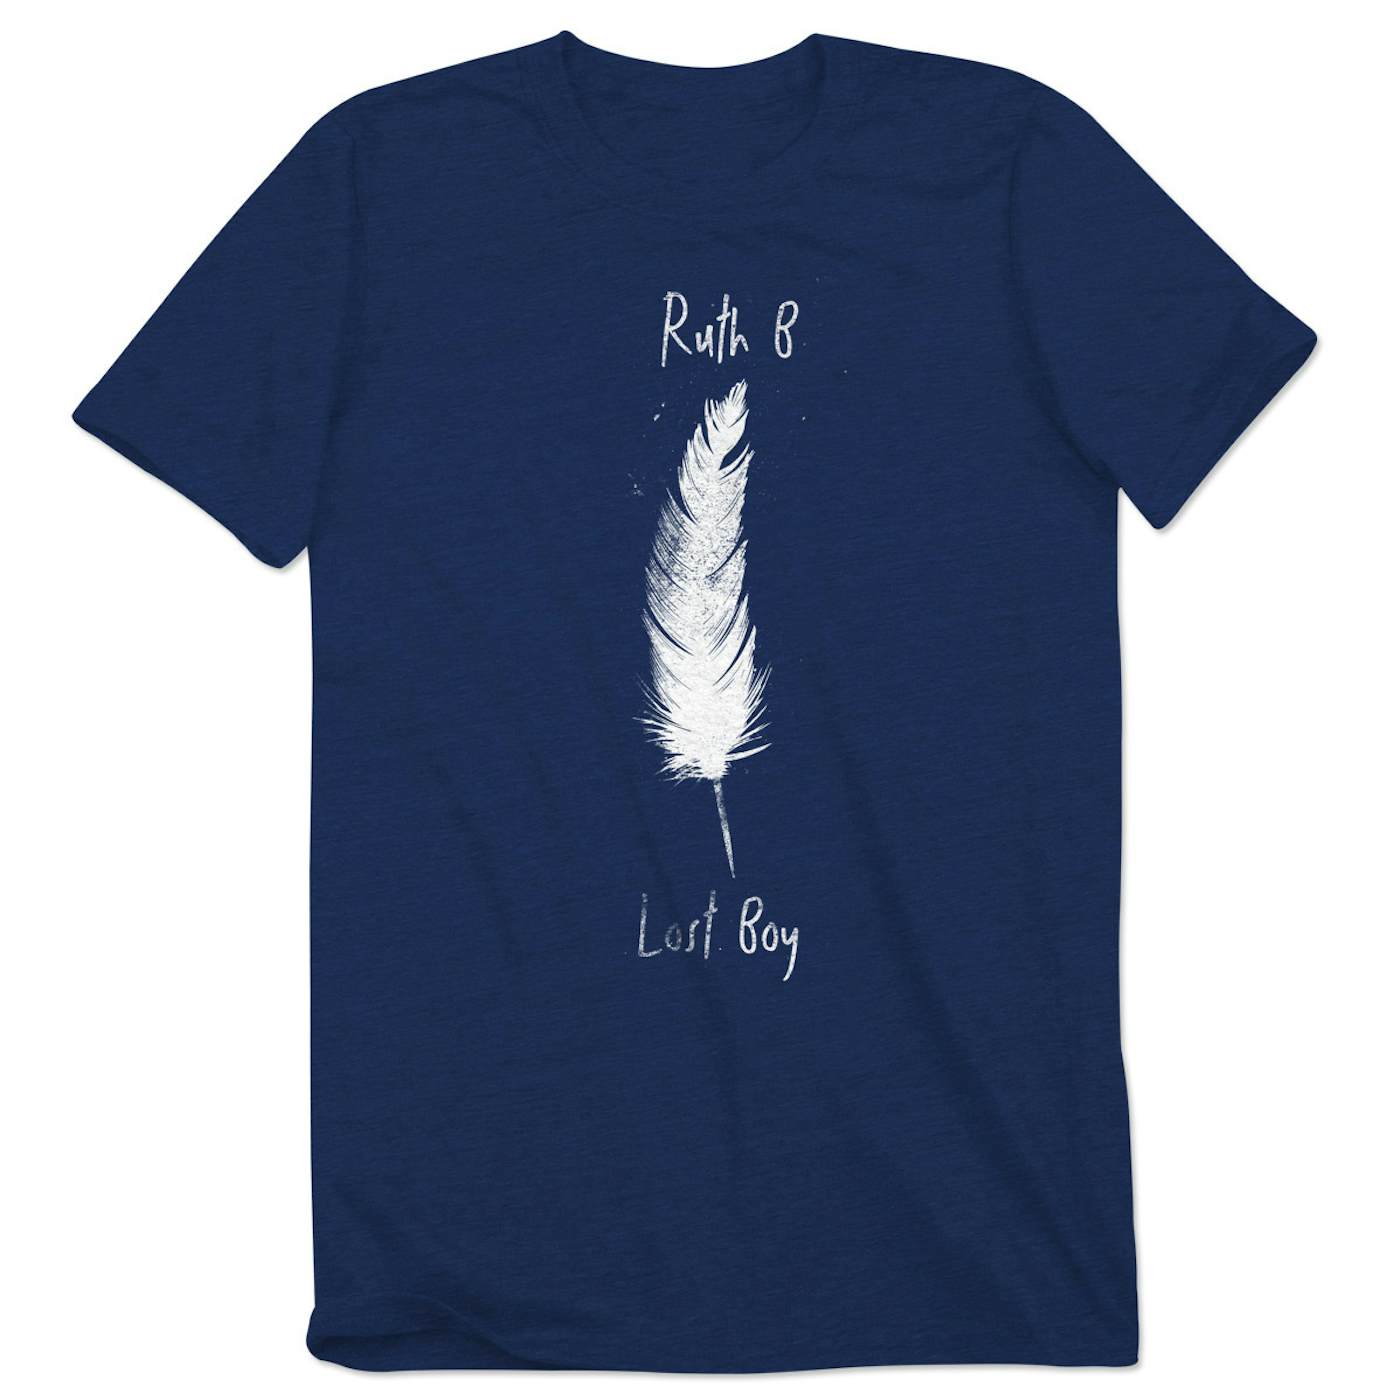 Ruth B. Lost Boy Unisex T-Shirt